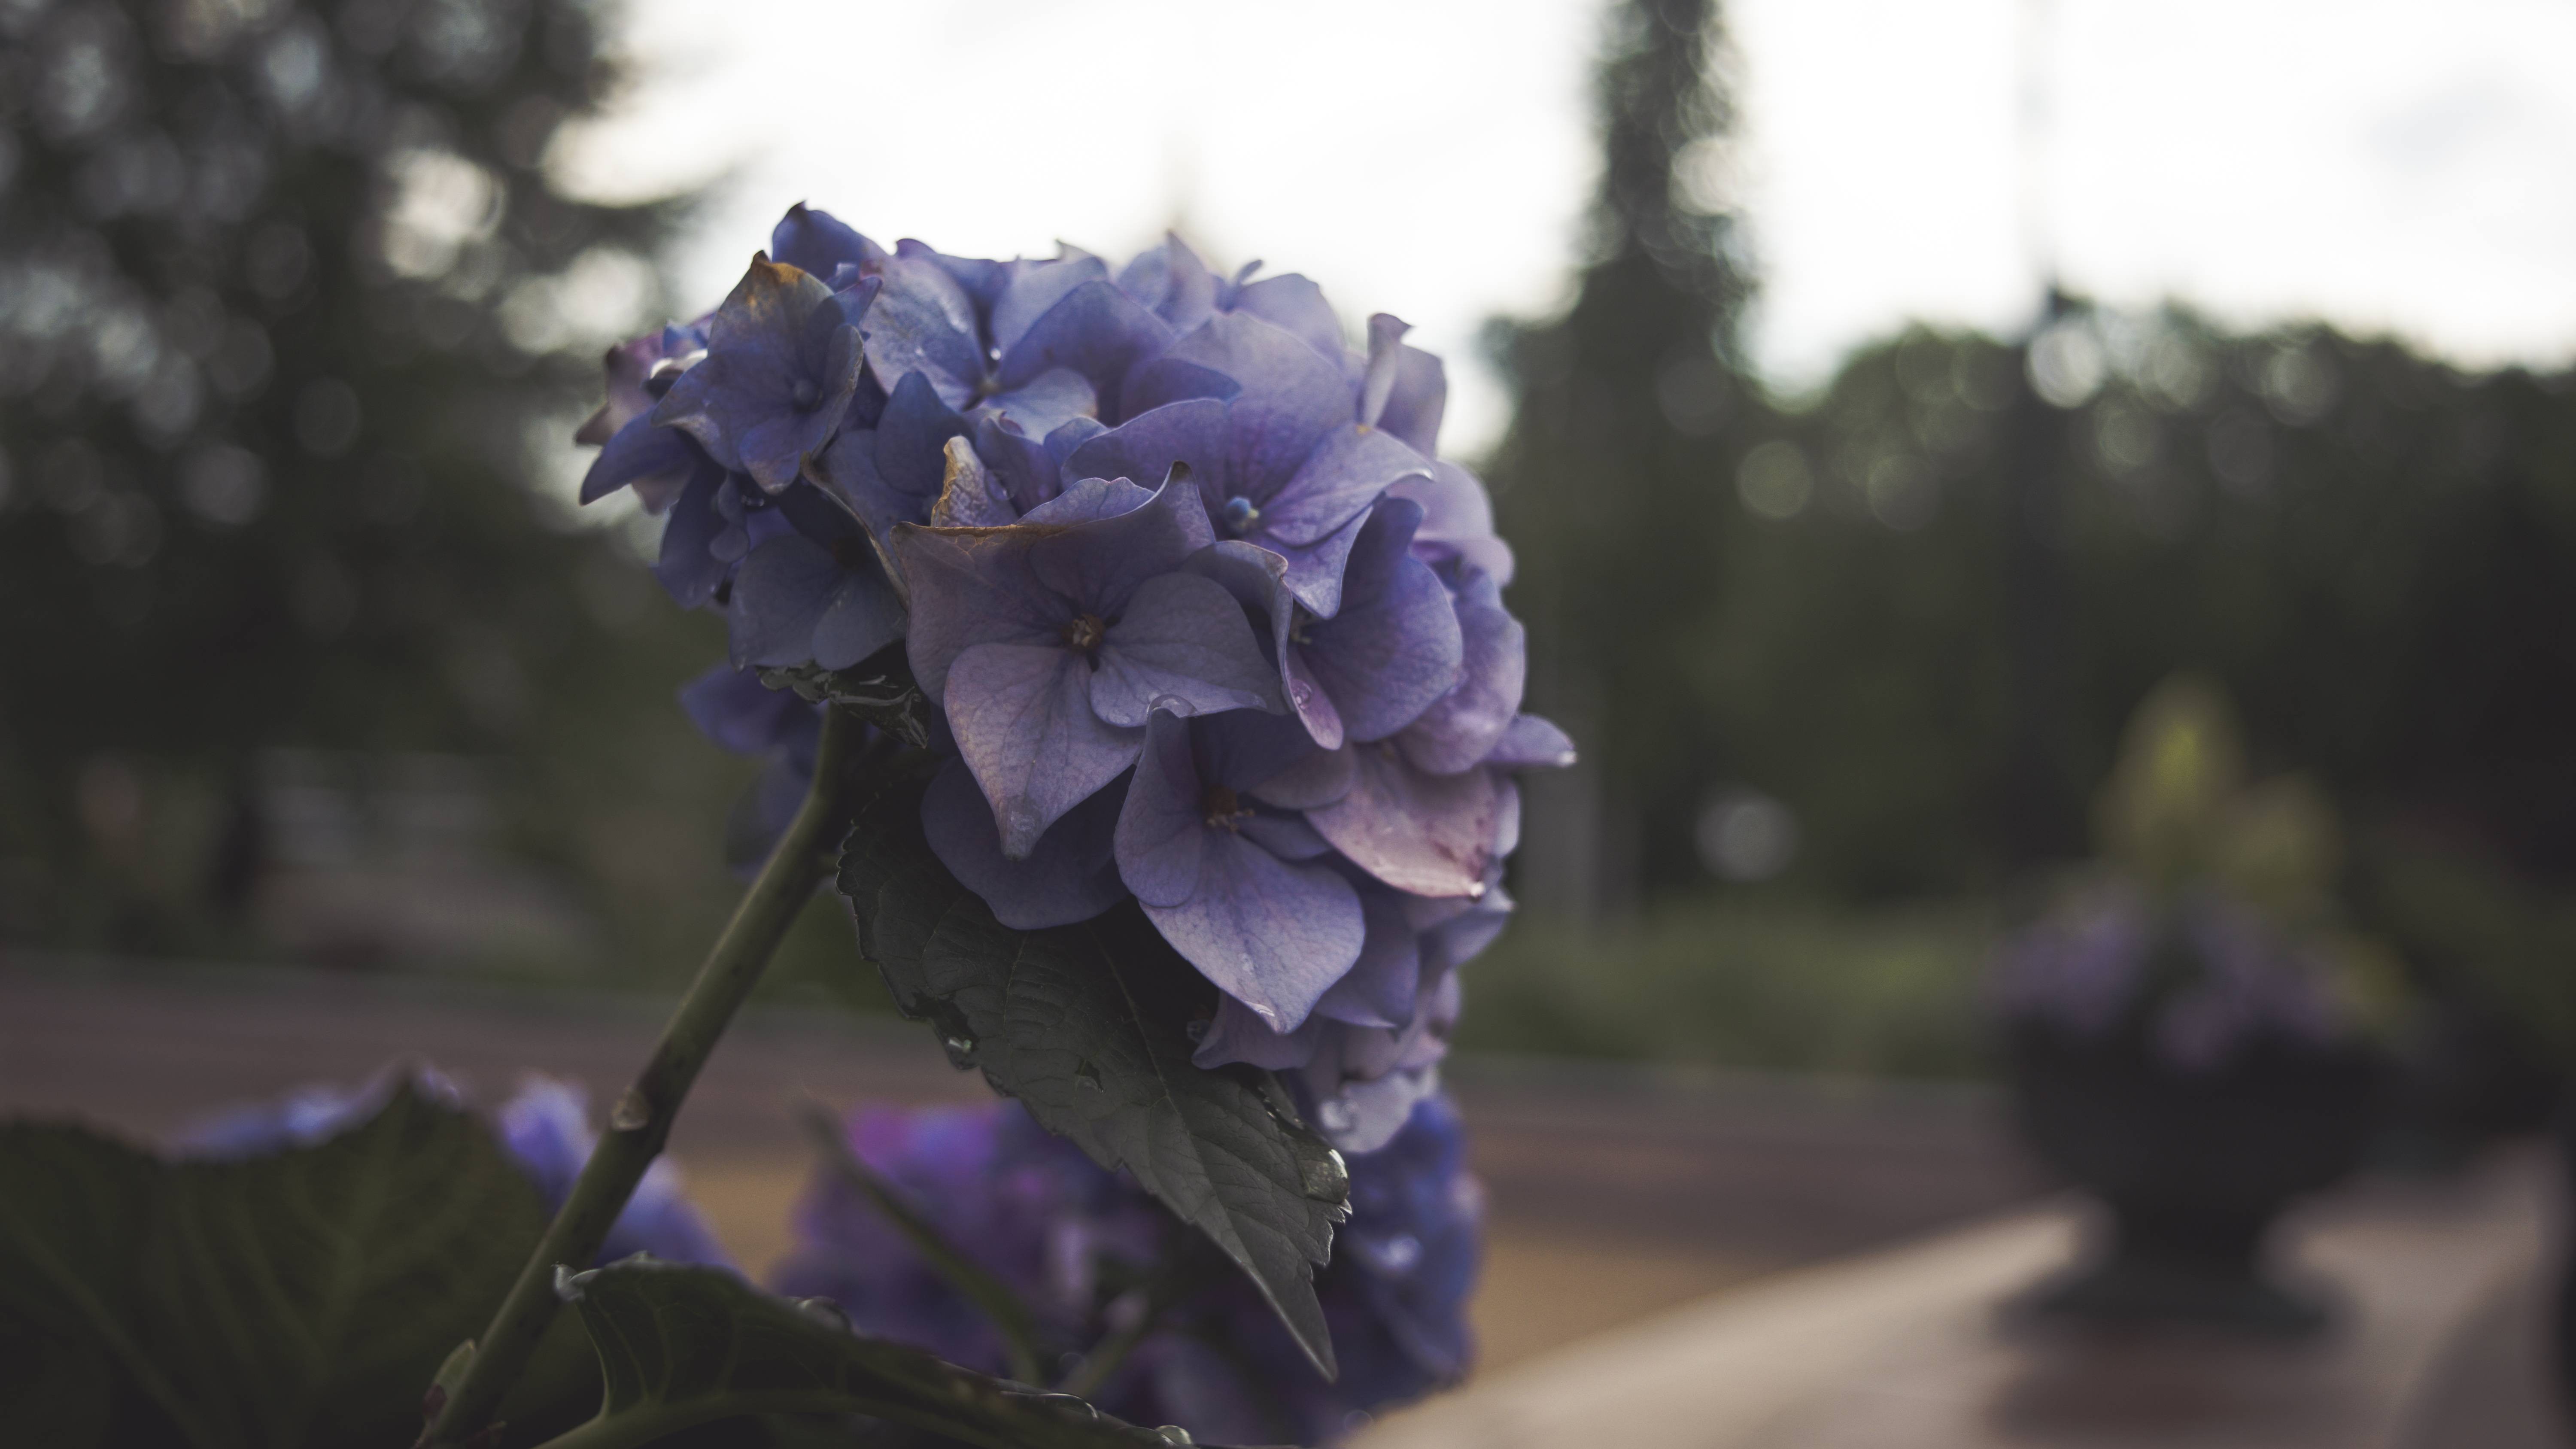 General 6000x3375 flowers depth of field blue purple plants park garden outdoors hydrangea